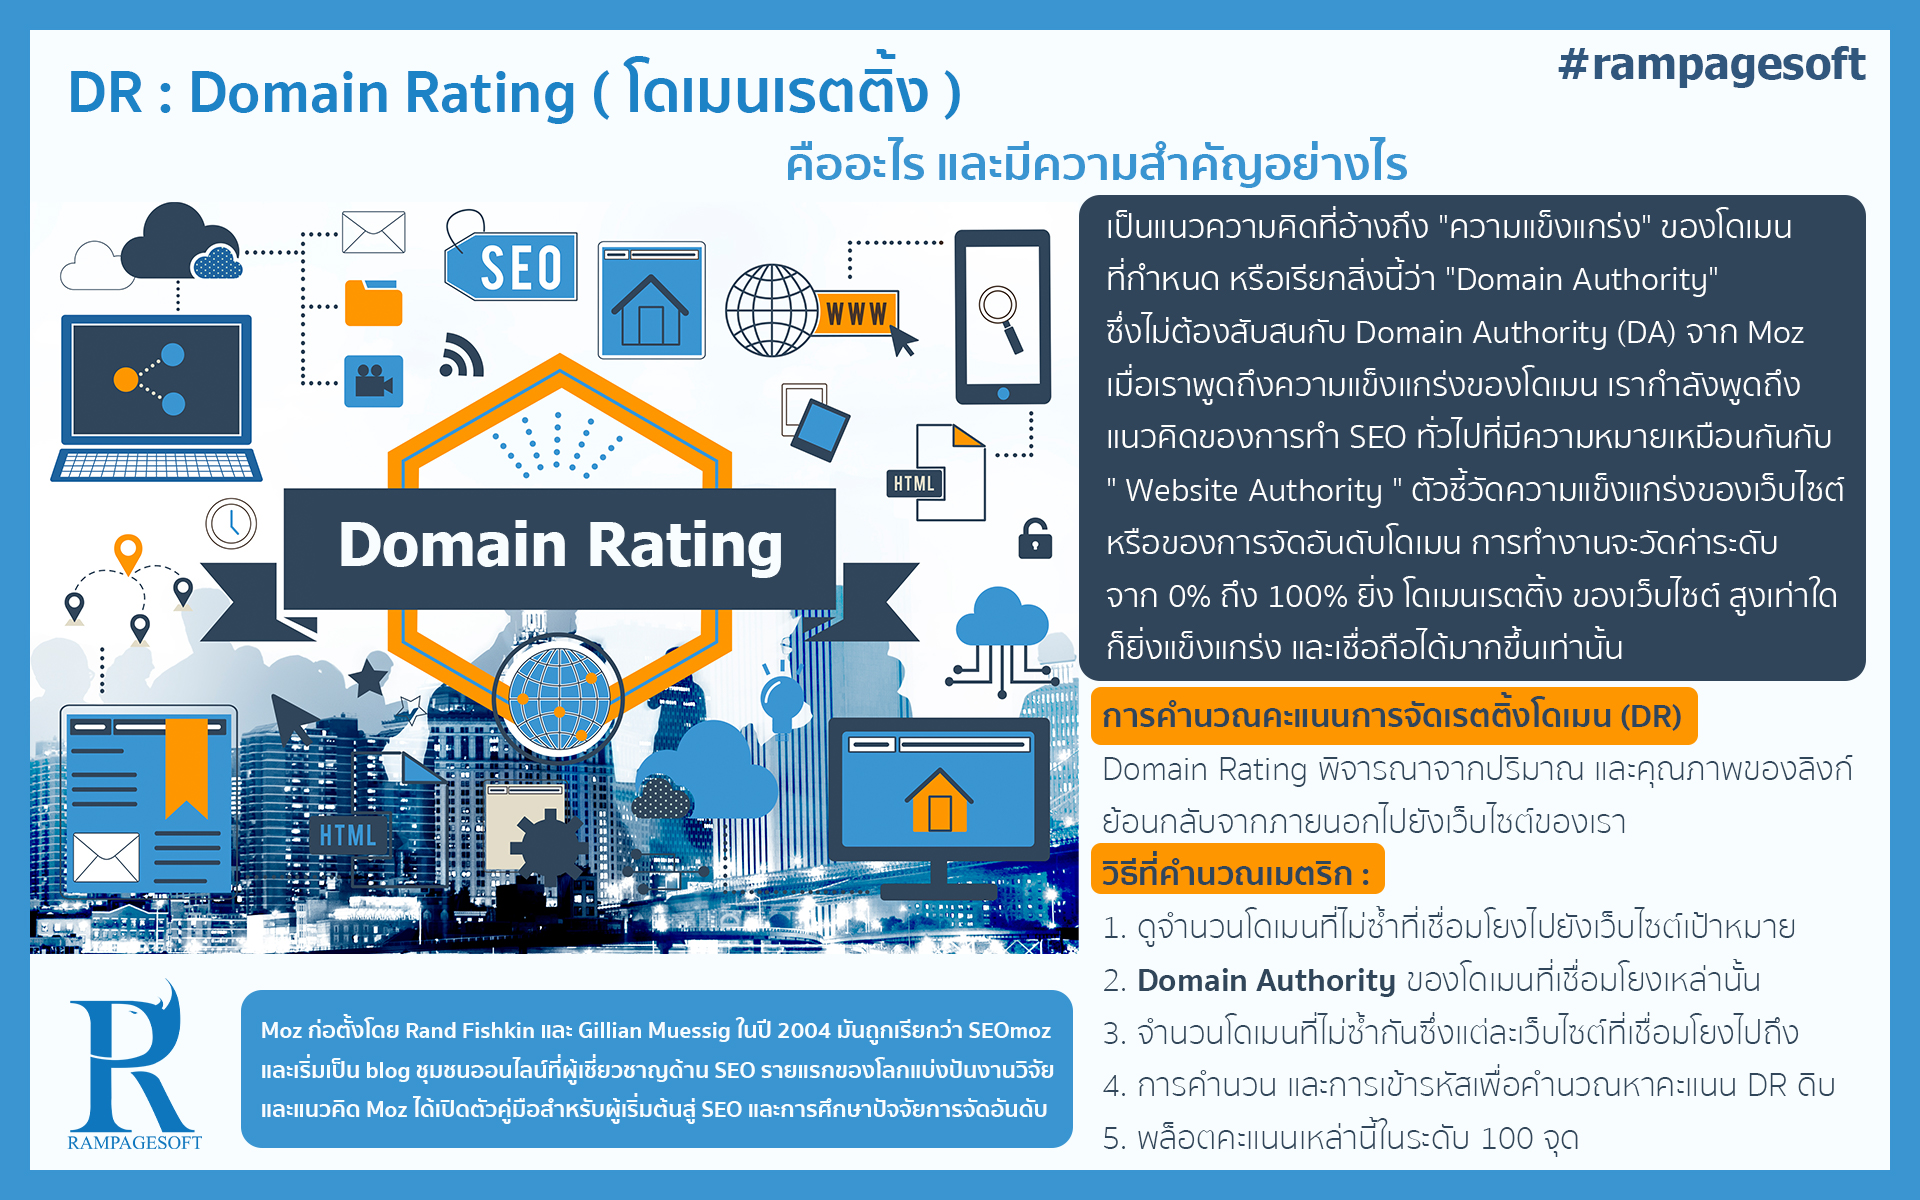 DR : Domain Rating ( โดเมนเรตติ้ง ) | TTT-WEBSITE รับทําเว็บไซต์ เว็บขยายสายงาน